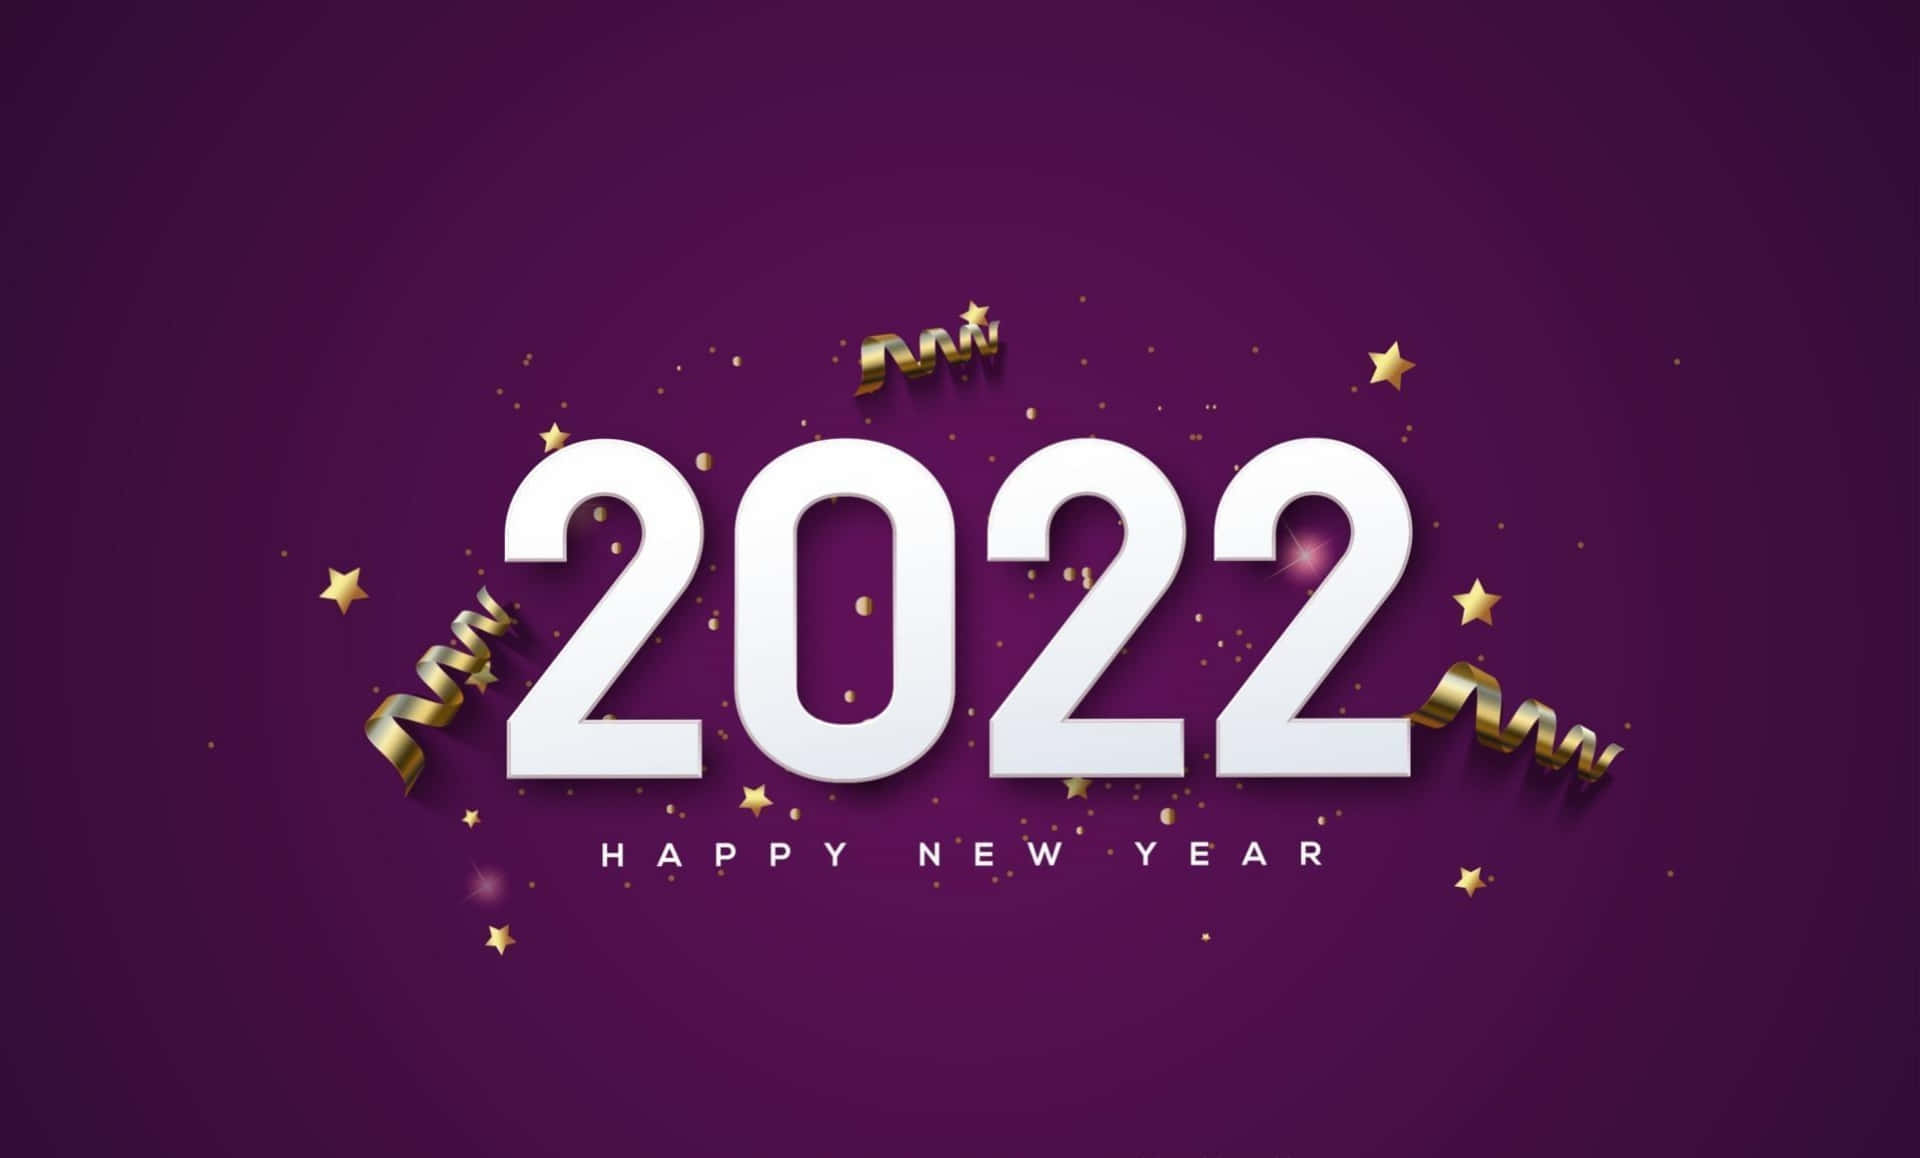 Tiauguro Un Felice E Gioioso Anno Nuovo 2022!